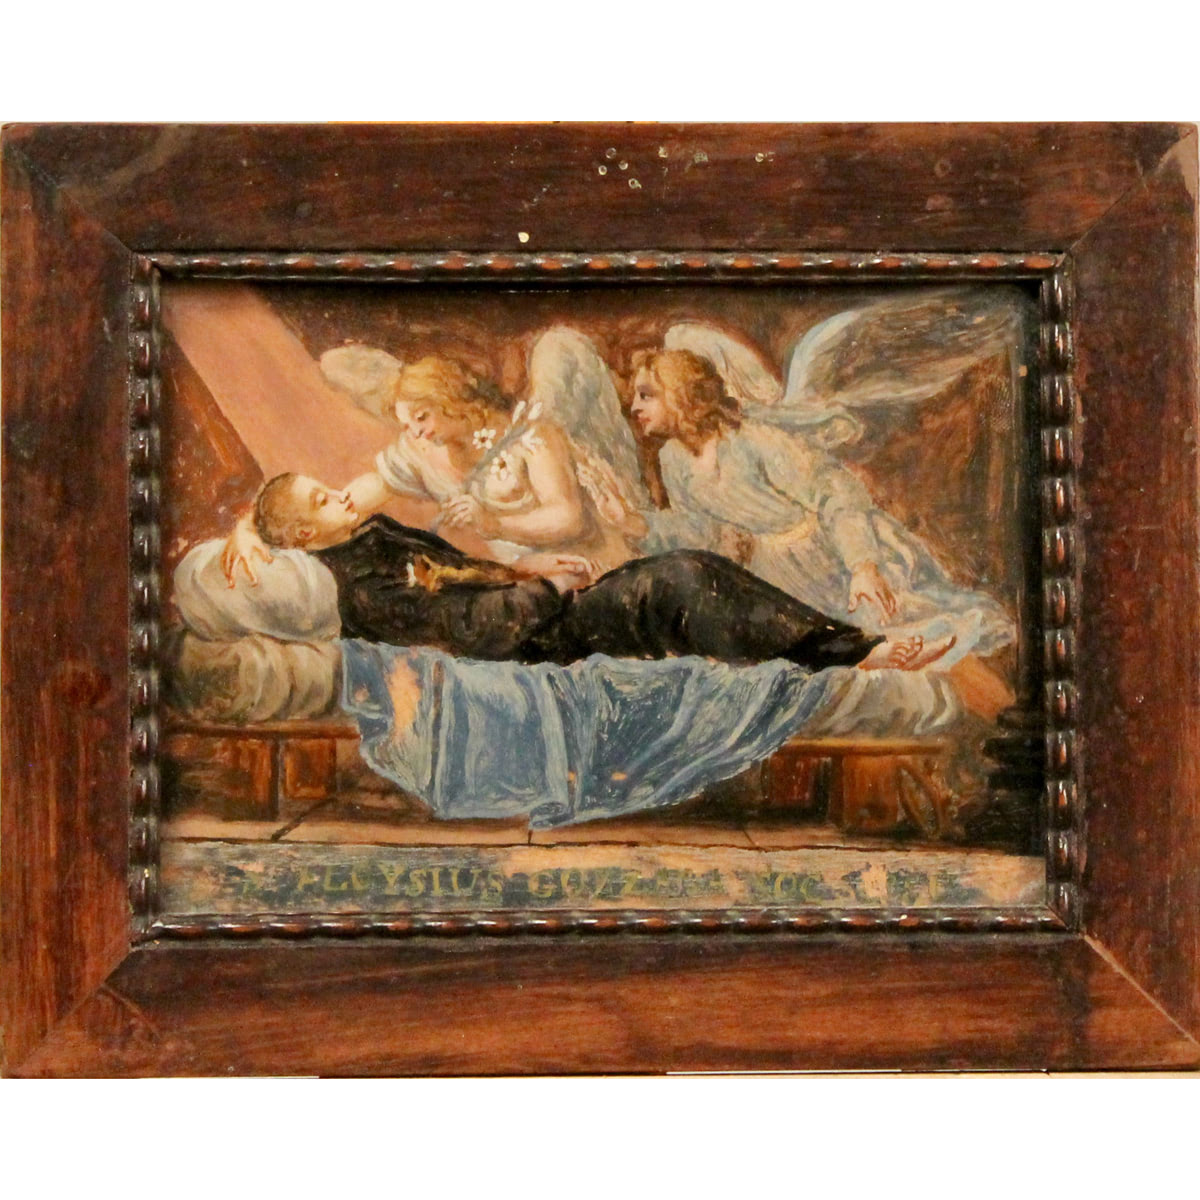 Scuola siciliana del secolo XVIII "La morte di San Luigi" - Sicilian school of the 18th century "The Death of Saint Louis"